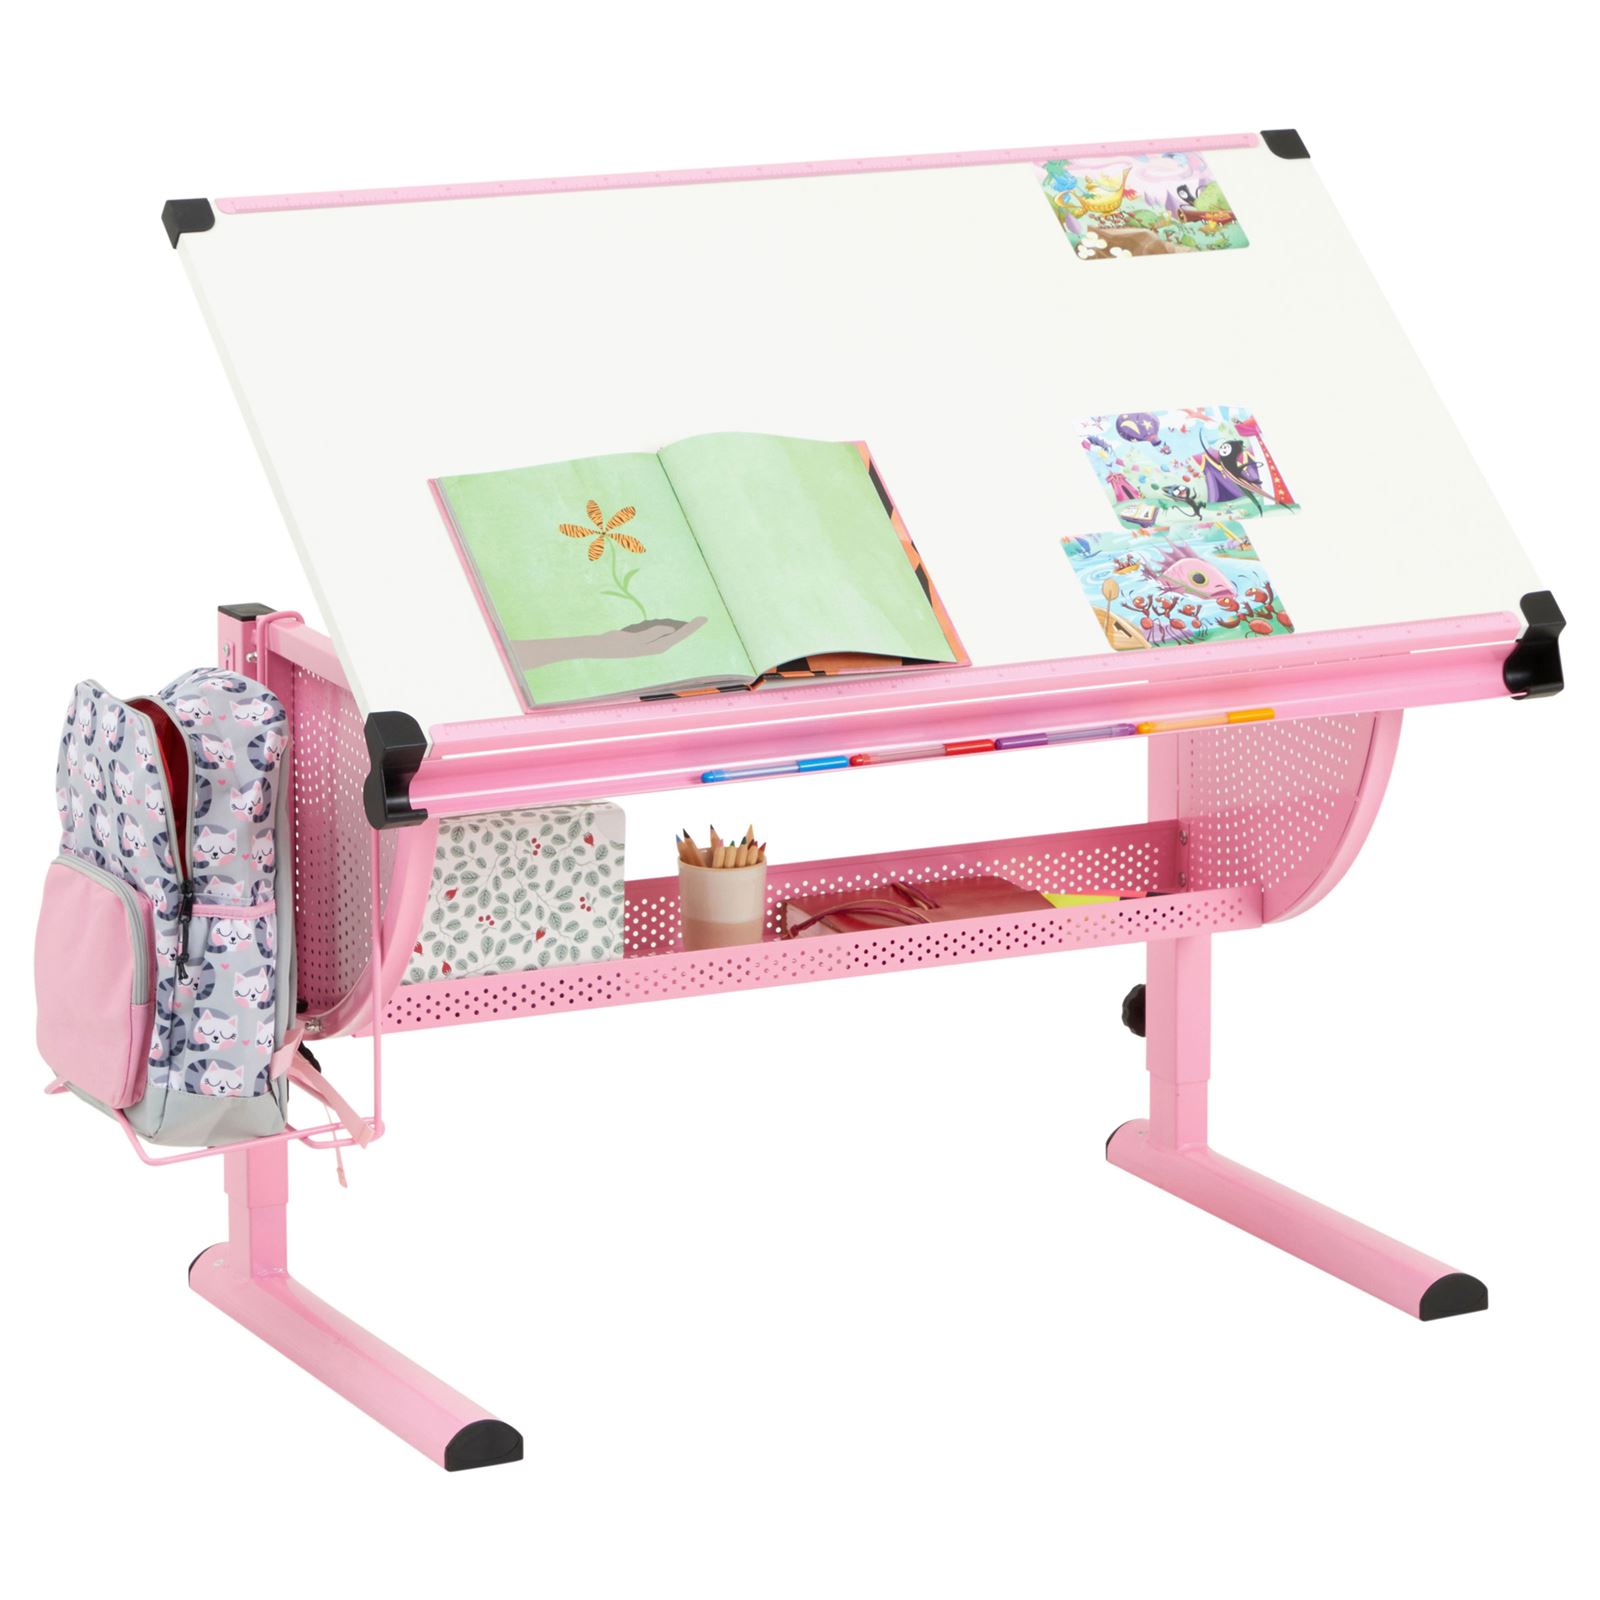 Kinderschreibtisch höhenverstellbar Schreibtisch neigbar Tisch mit Ablage